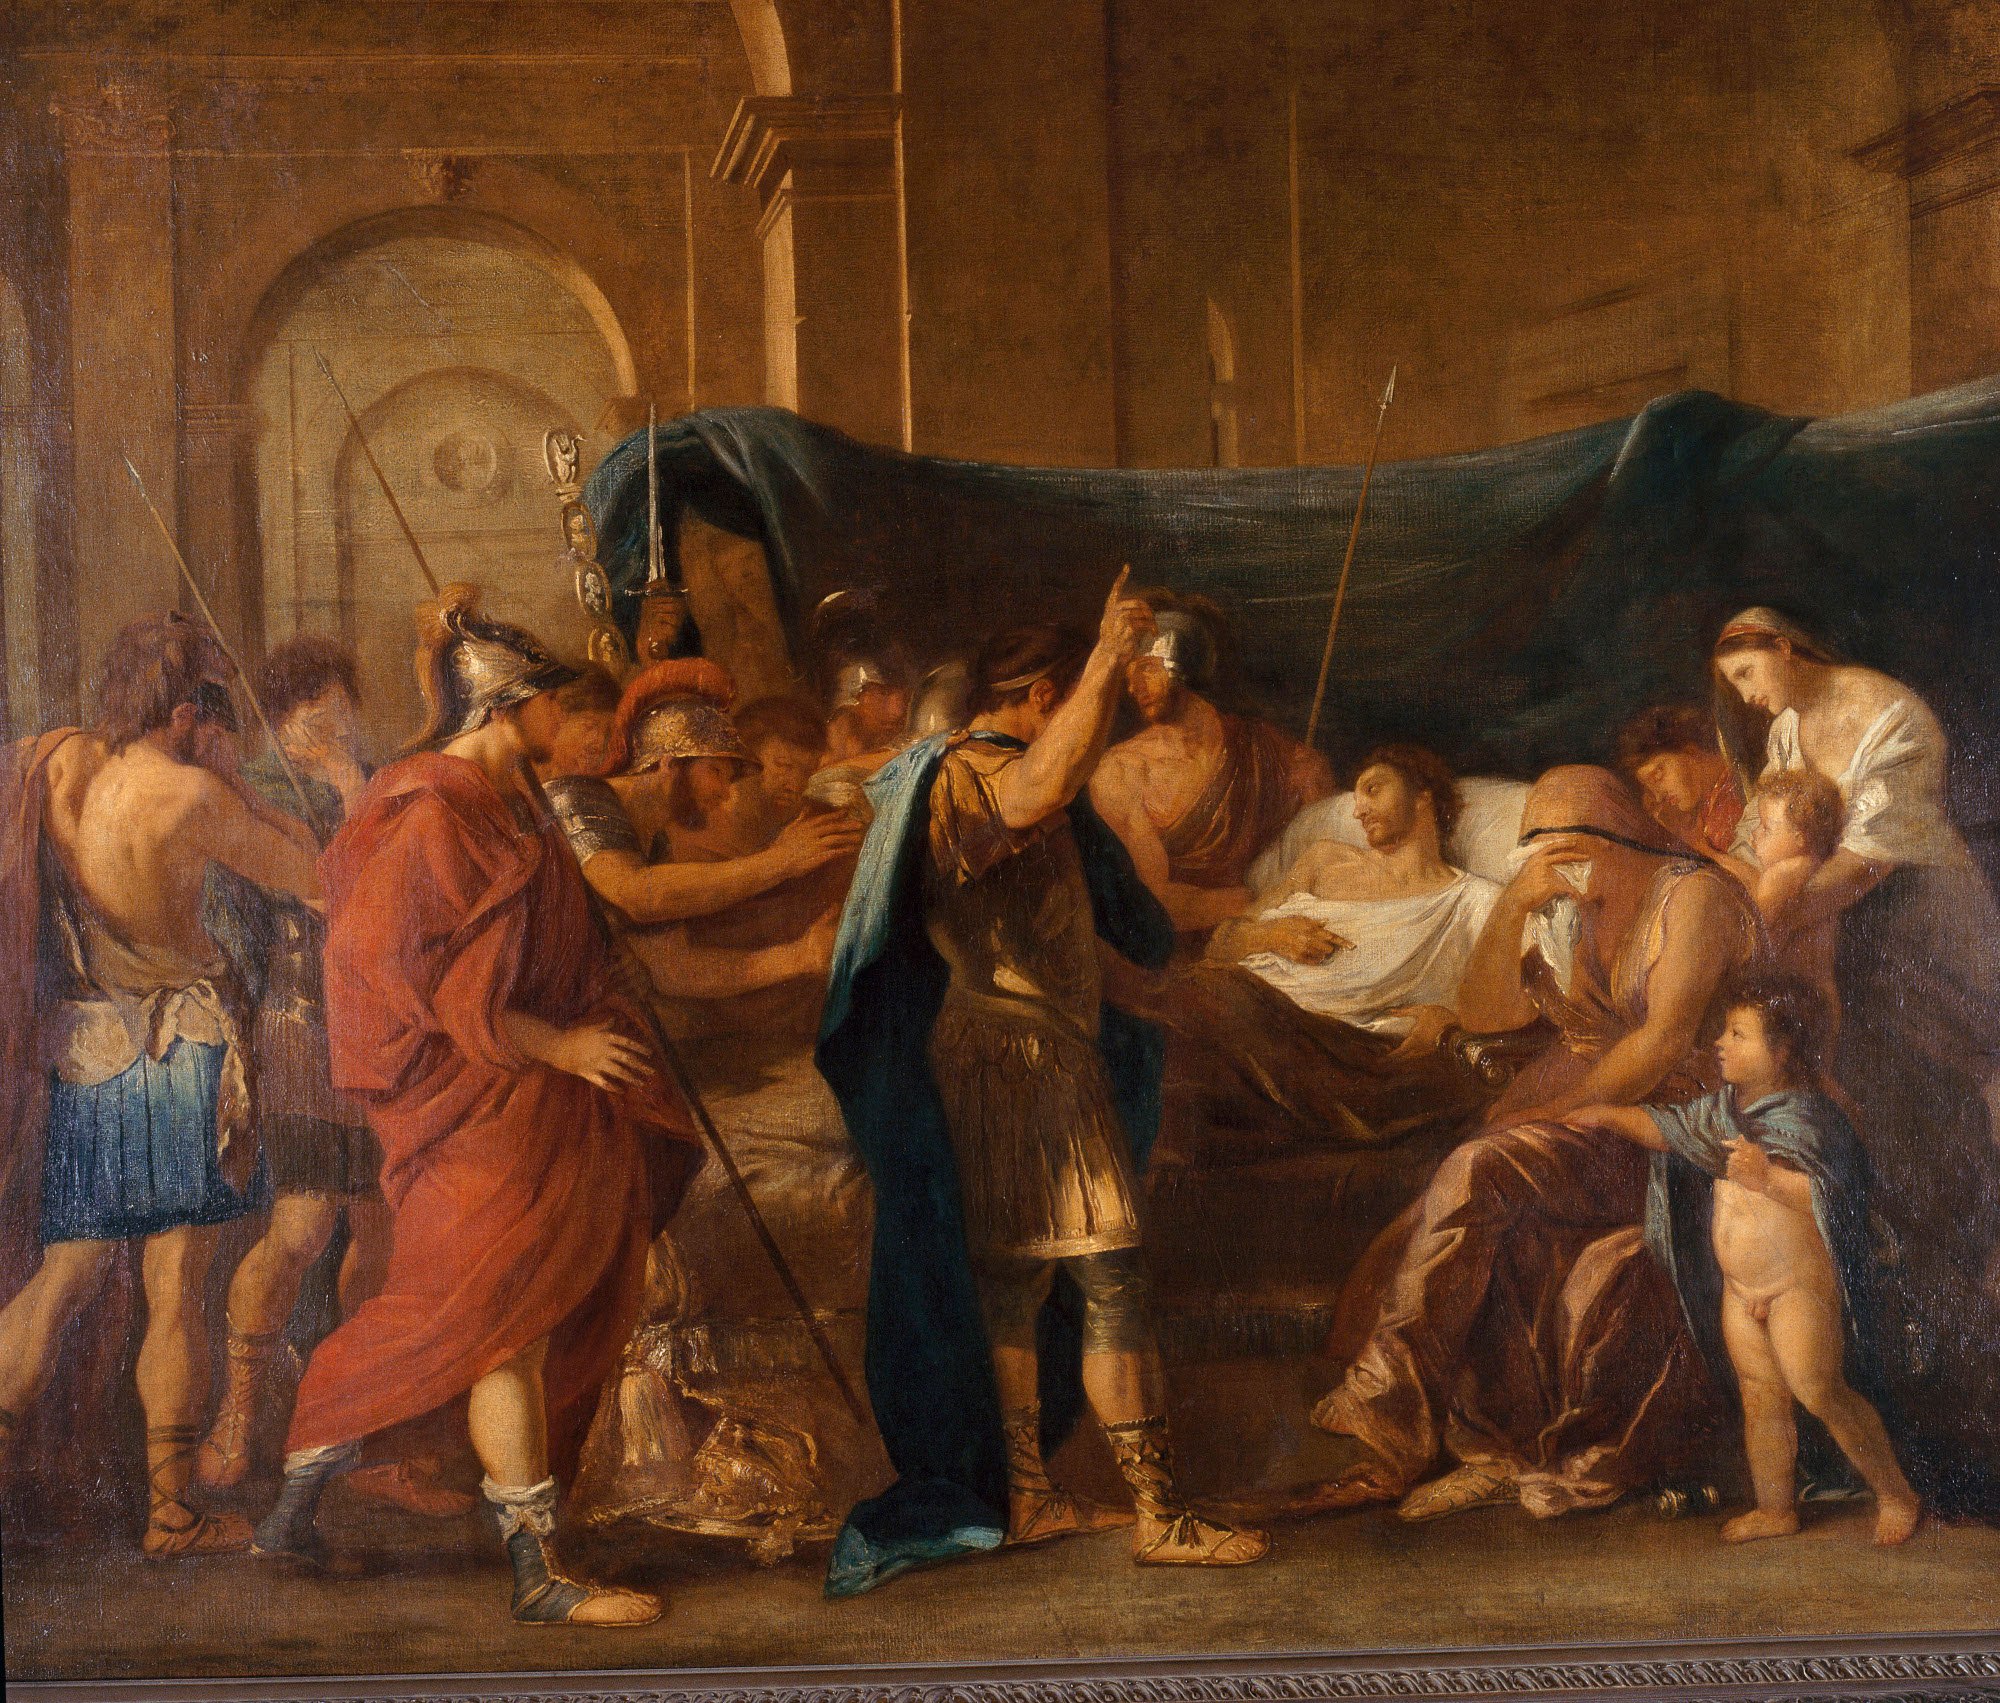 Copie d'après "La Mort de Germanicus" de Nicolas Poussin